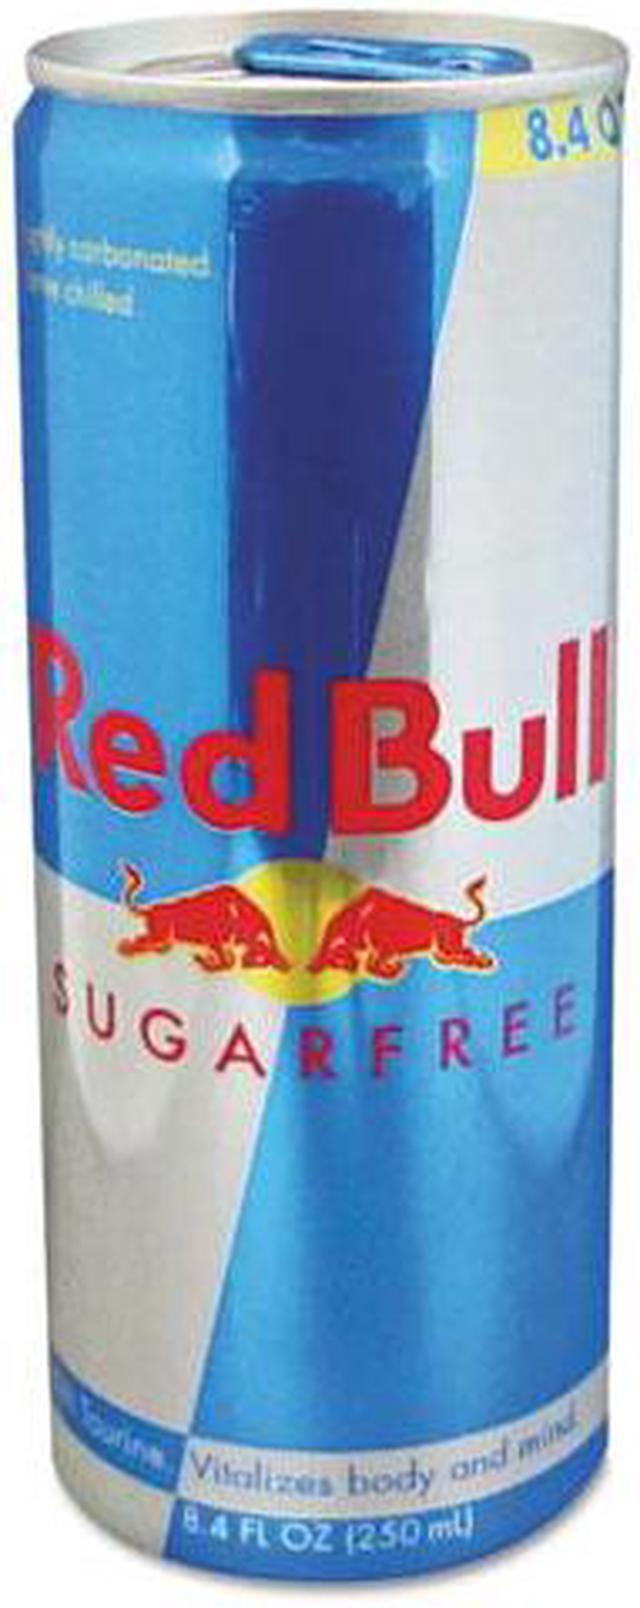  Red Bull Sugar Free Energy Drink, 8.4 Fl Oz, 24 Cans